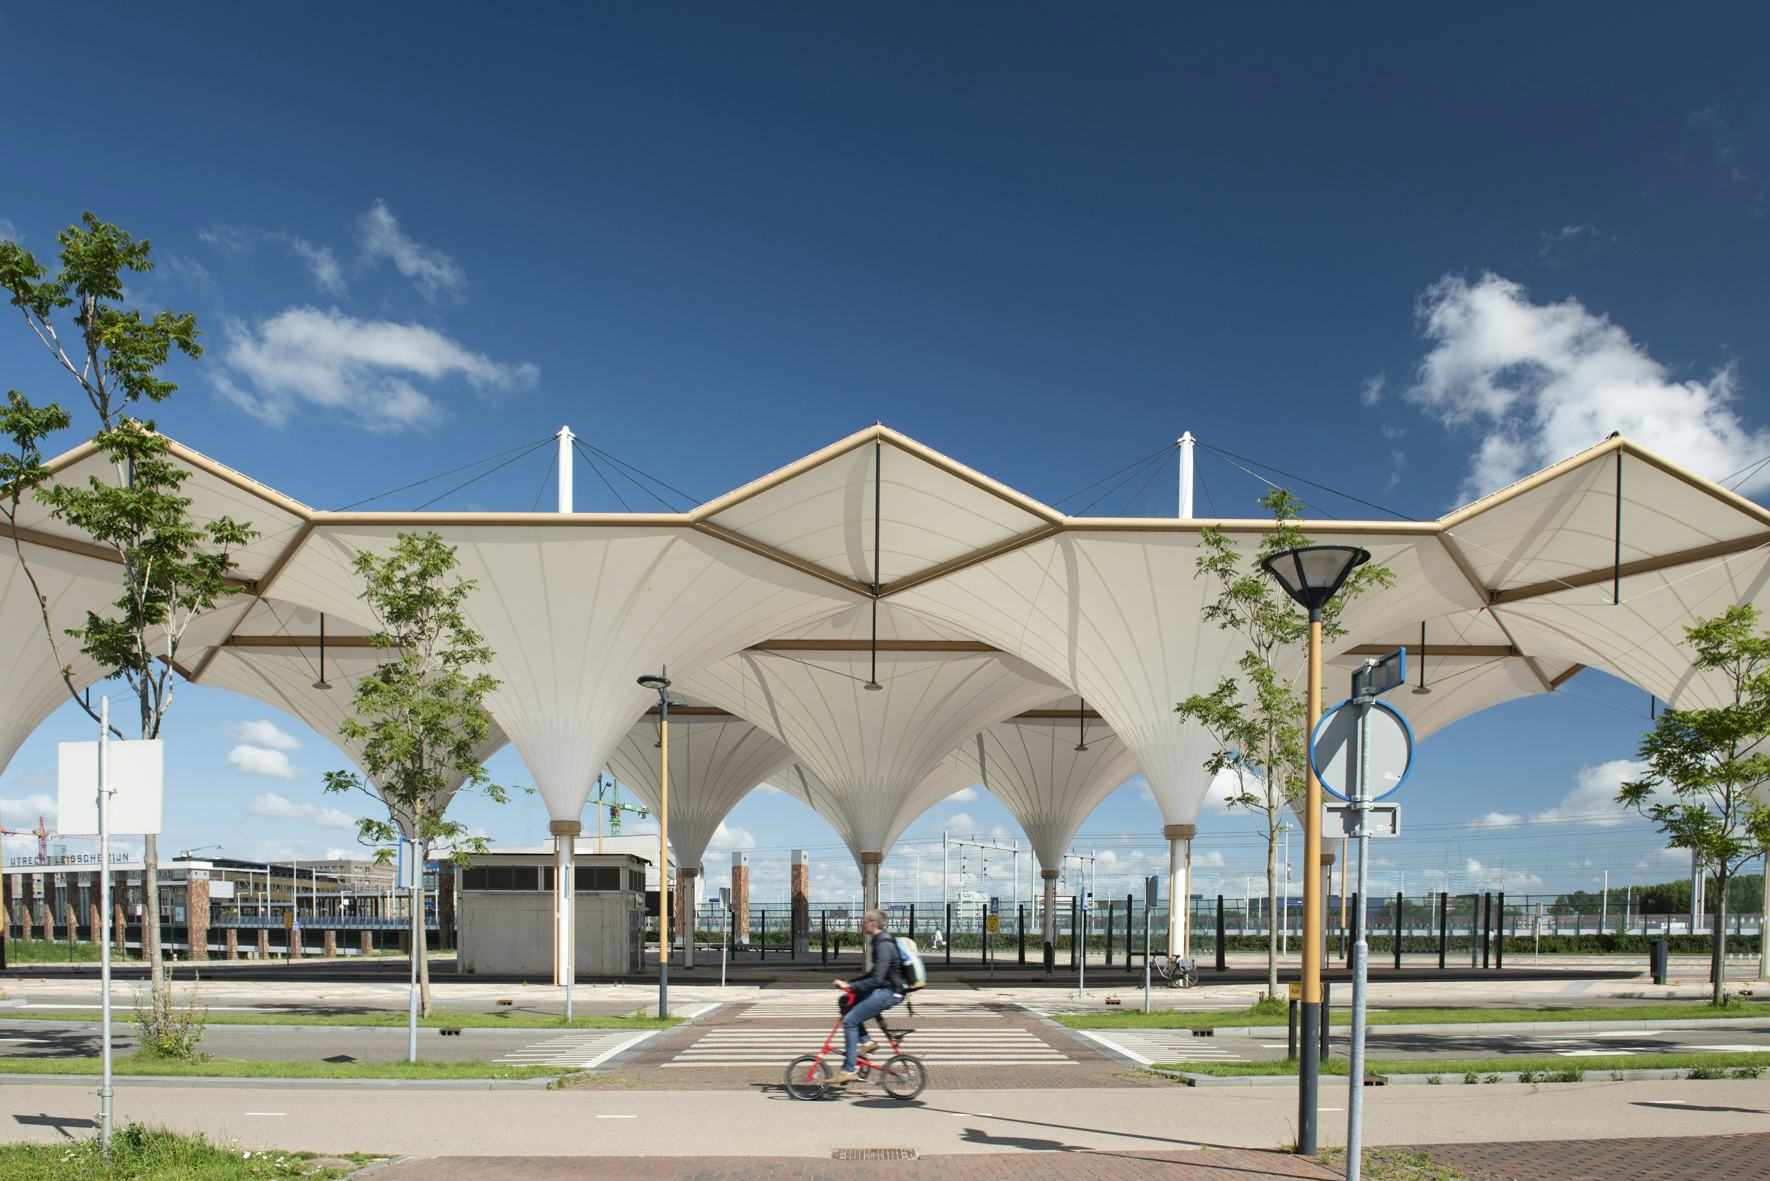 Busstation Leidsche Rijn 3 door architect Annebregje Snijders won in 2020 de Rietveldprijs